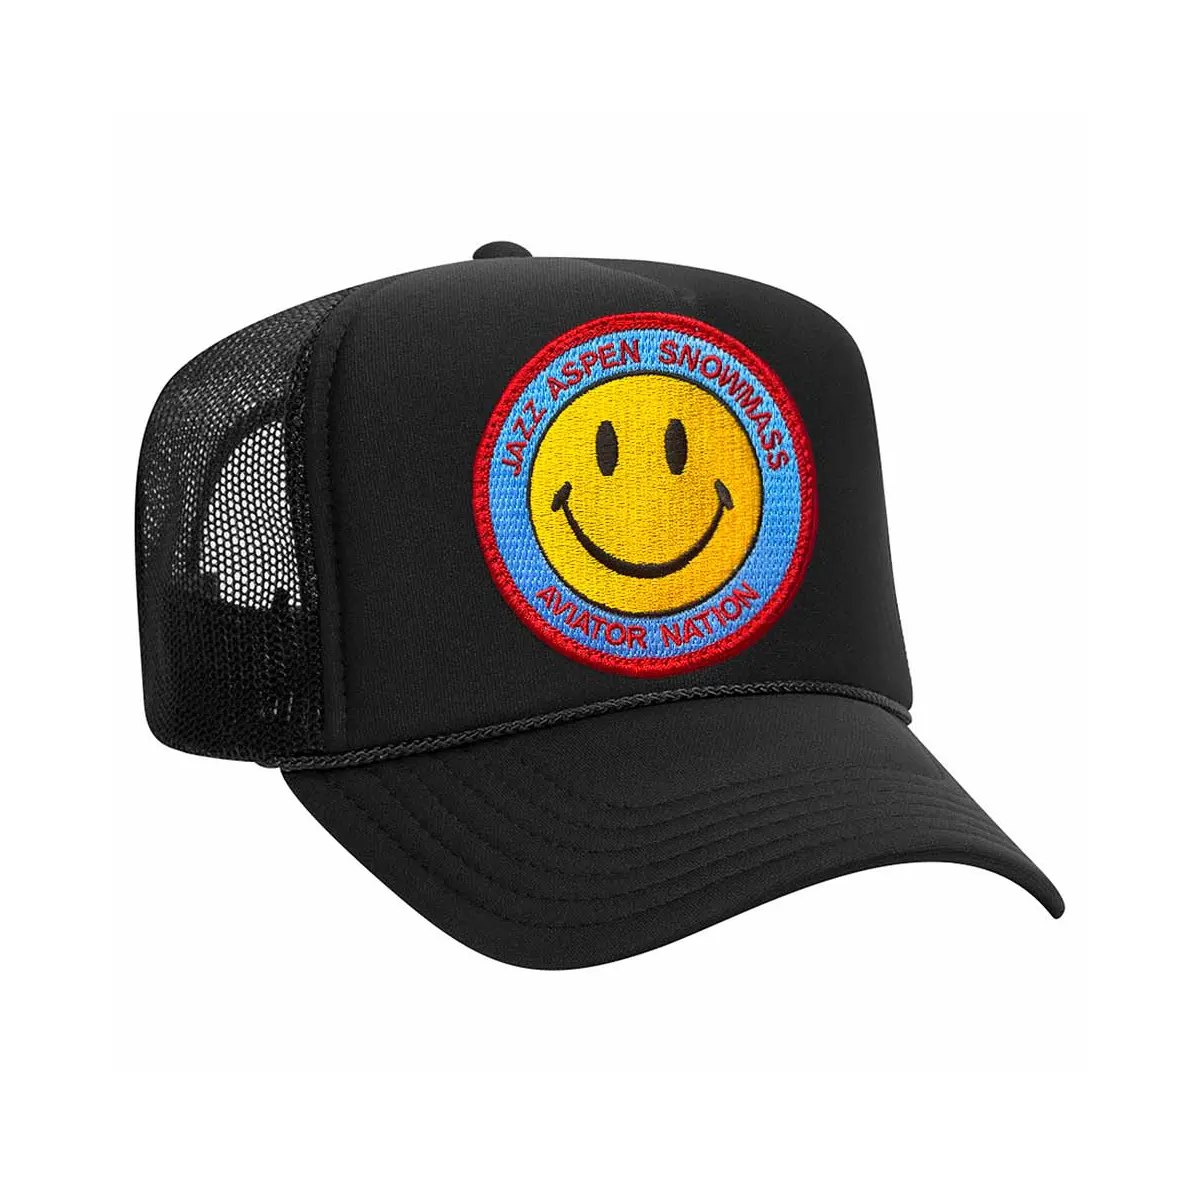 OEM nakış logosu köpük kamyon şoförü şapkası yüksek kalite 5 panel unisex şoför şapkası özel örgü siyah spor kap